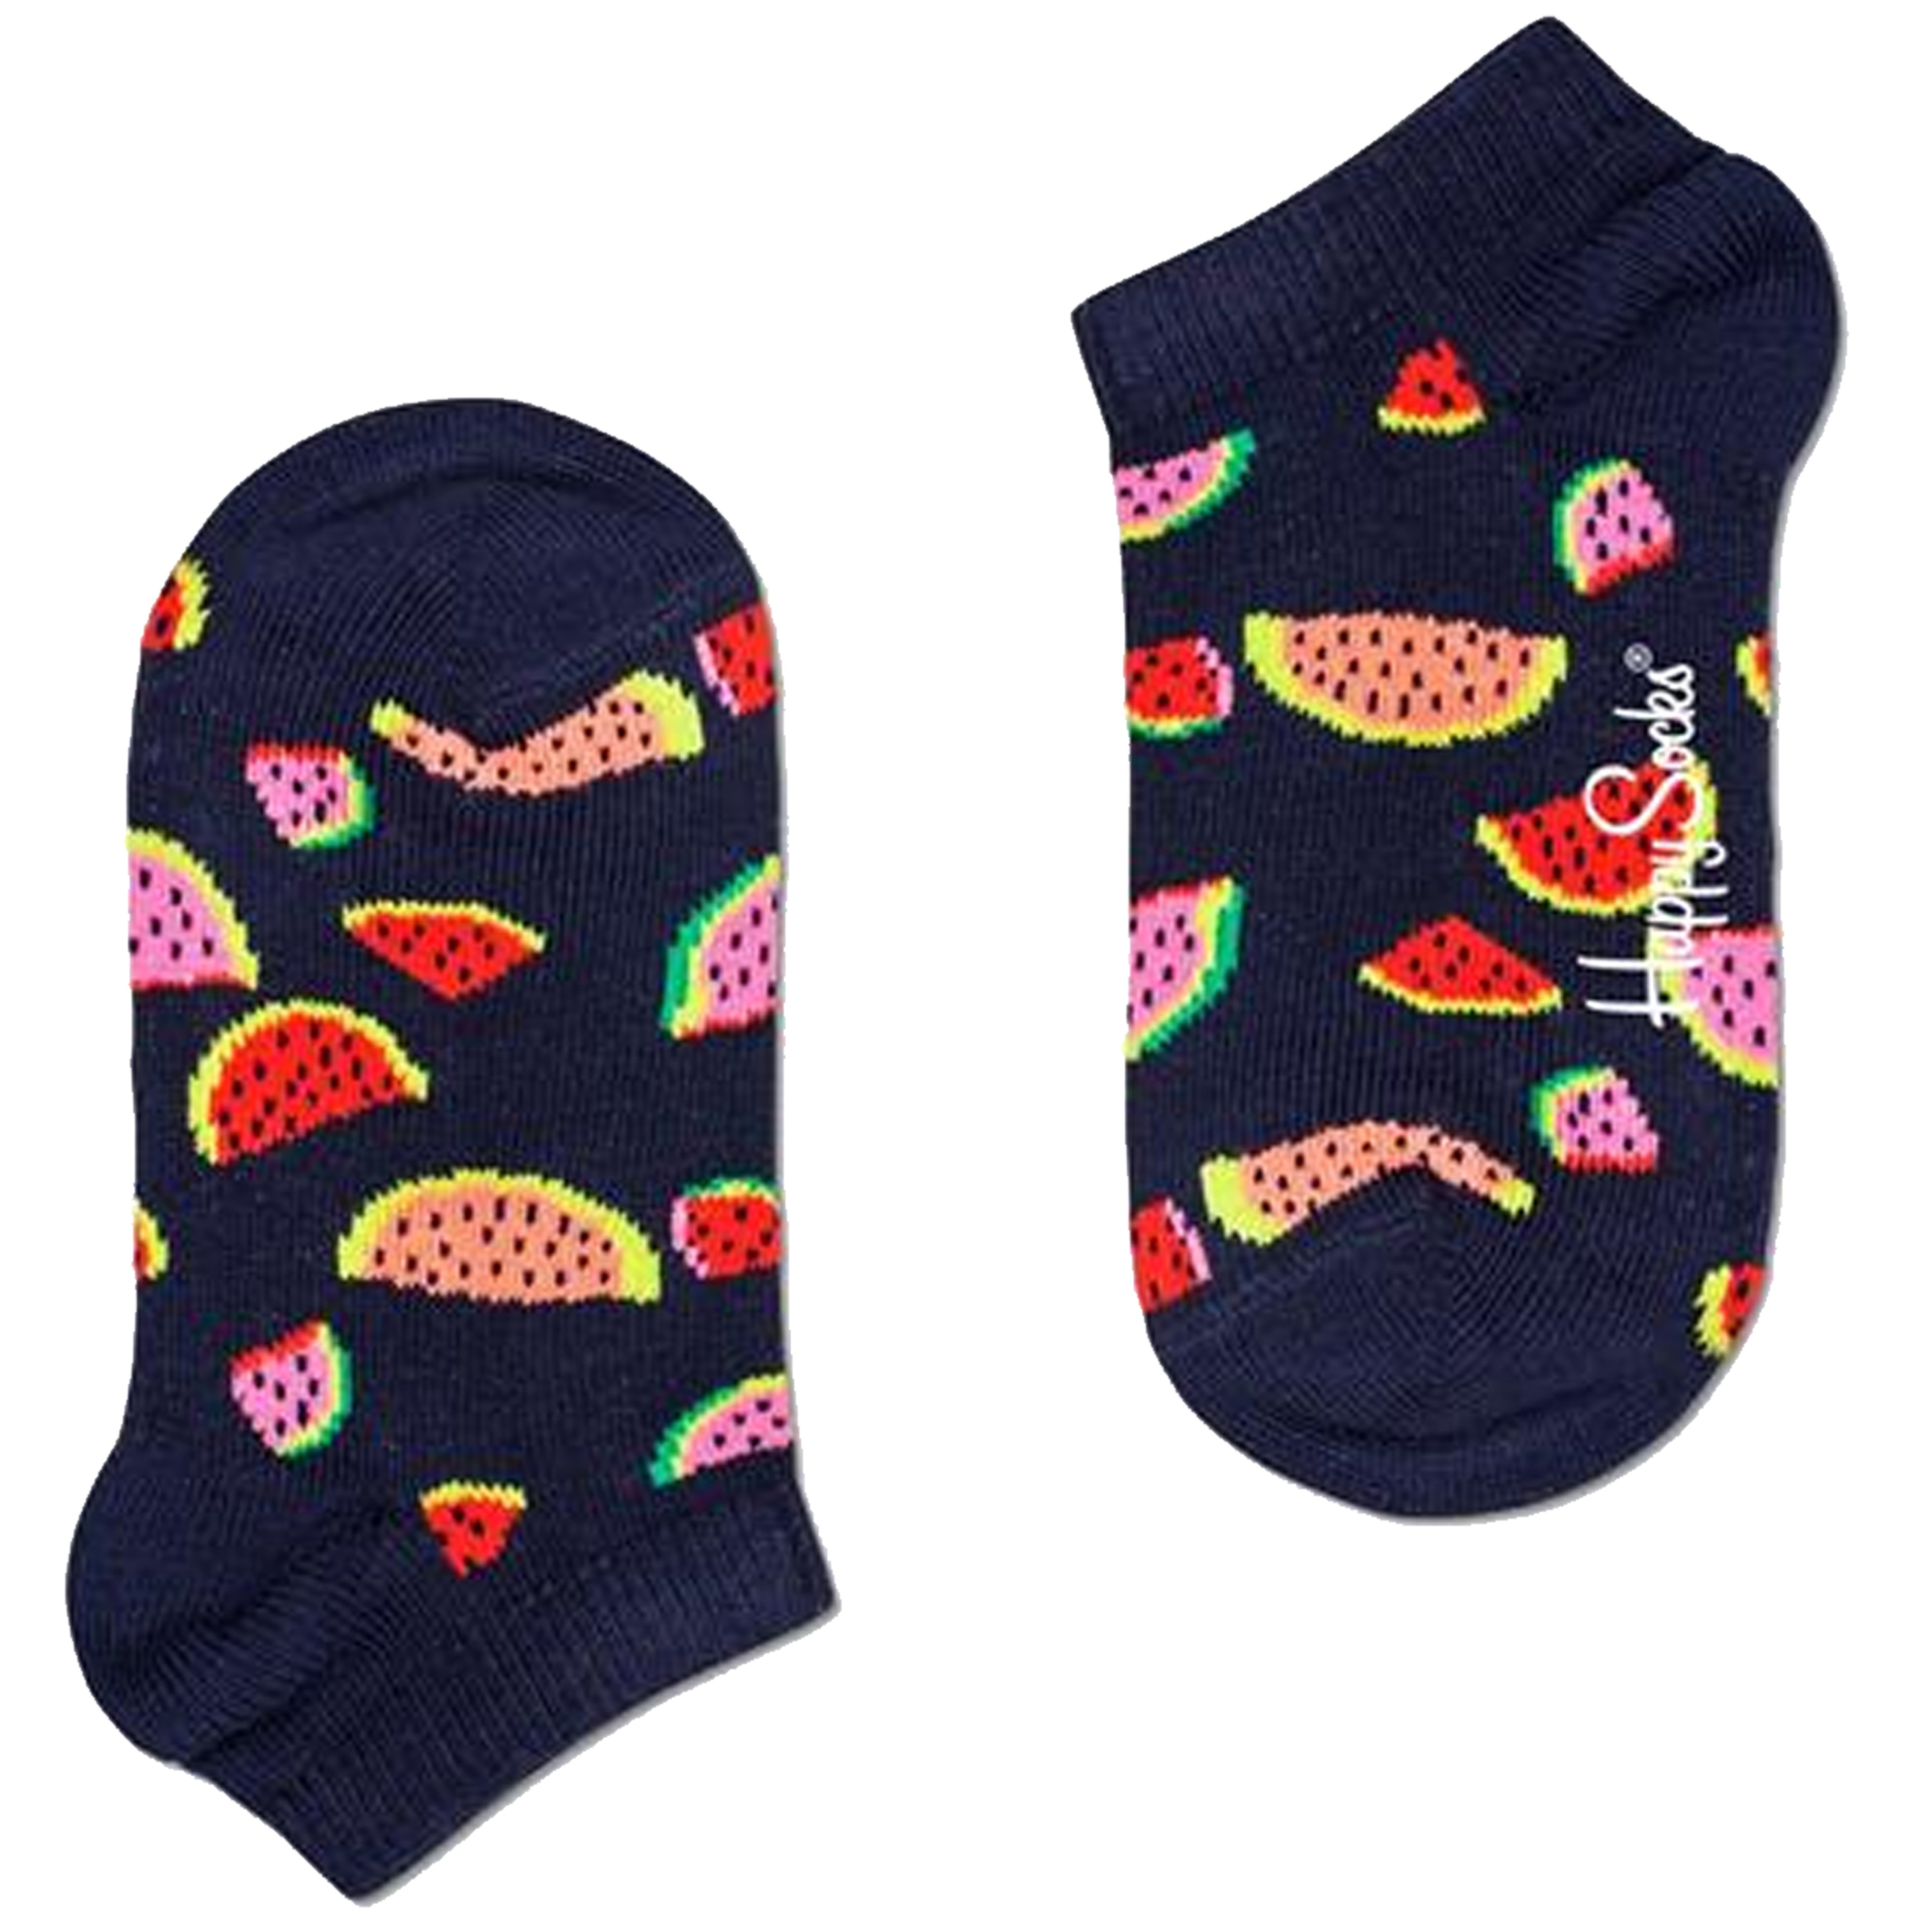 Meias Happy Socks Watermelon - multicolor - 